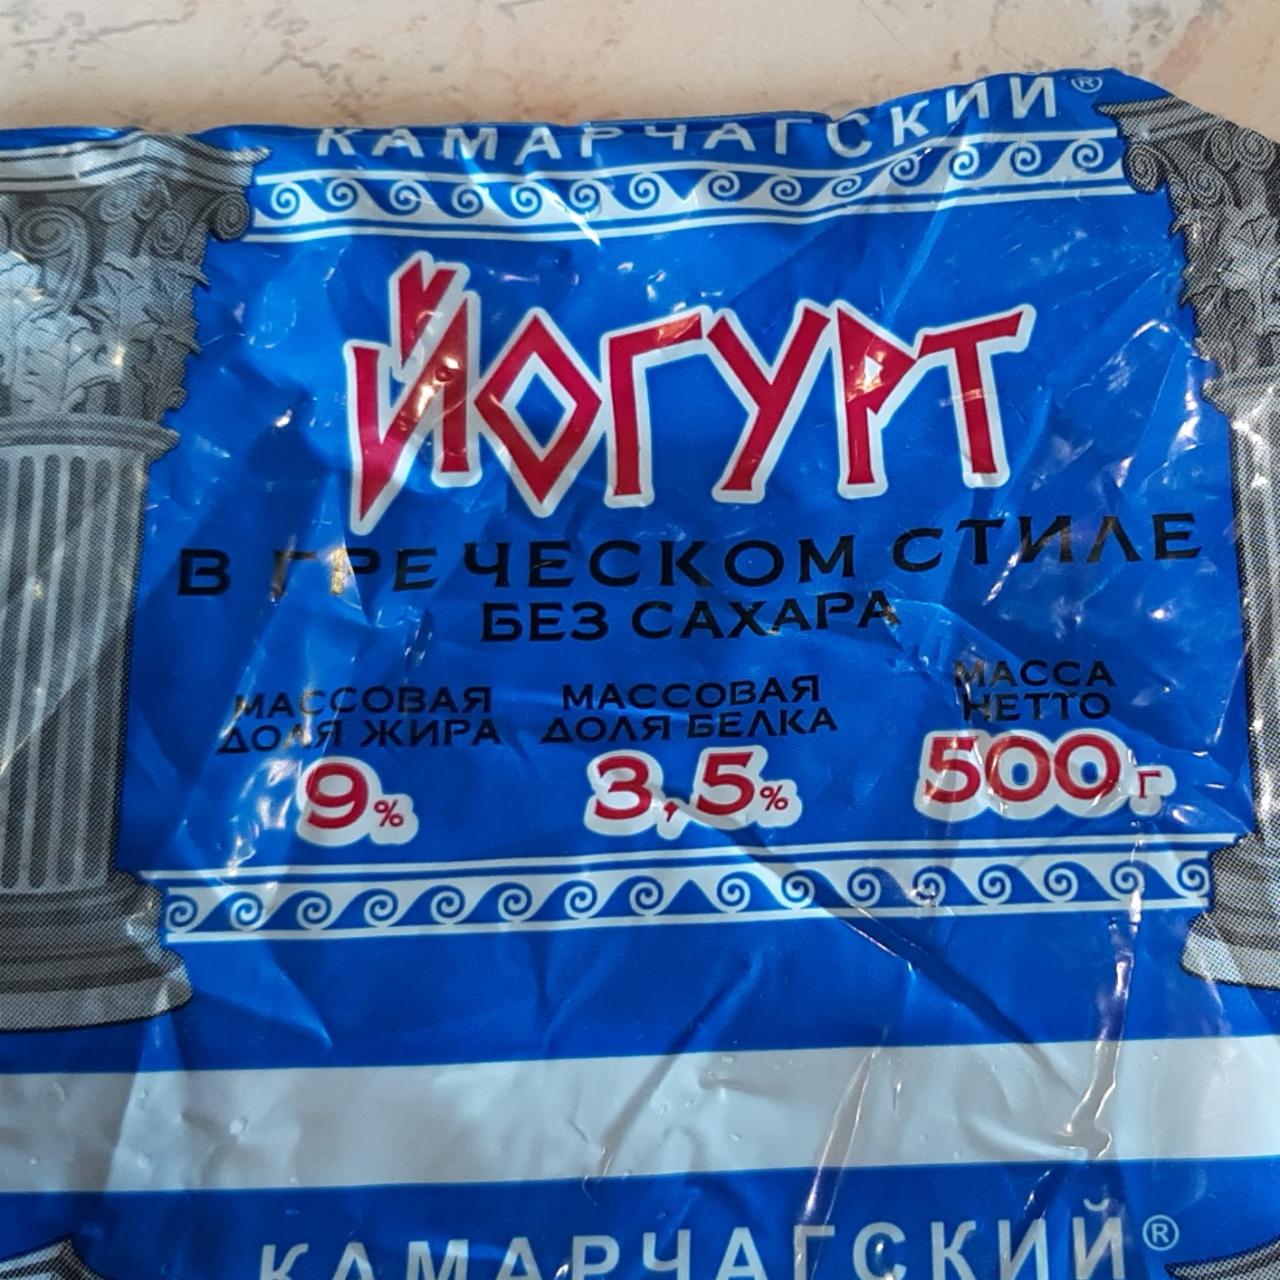 Фото - йогурт в греческом стиле 9% Камарчагский